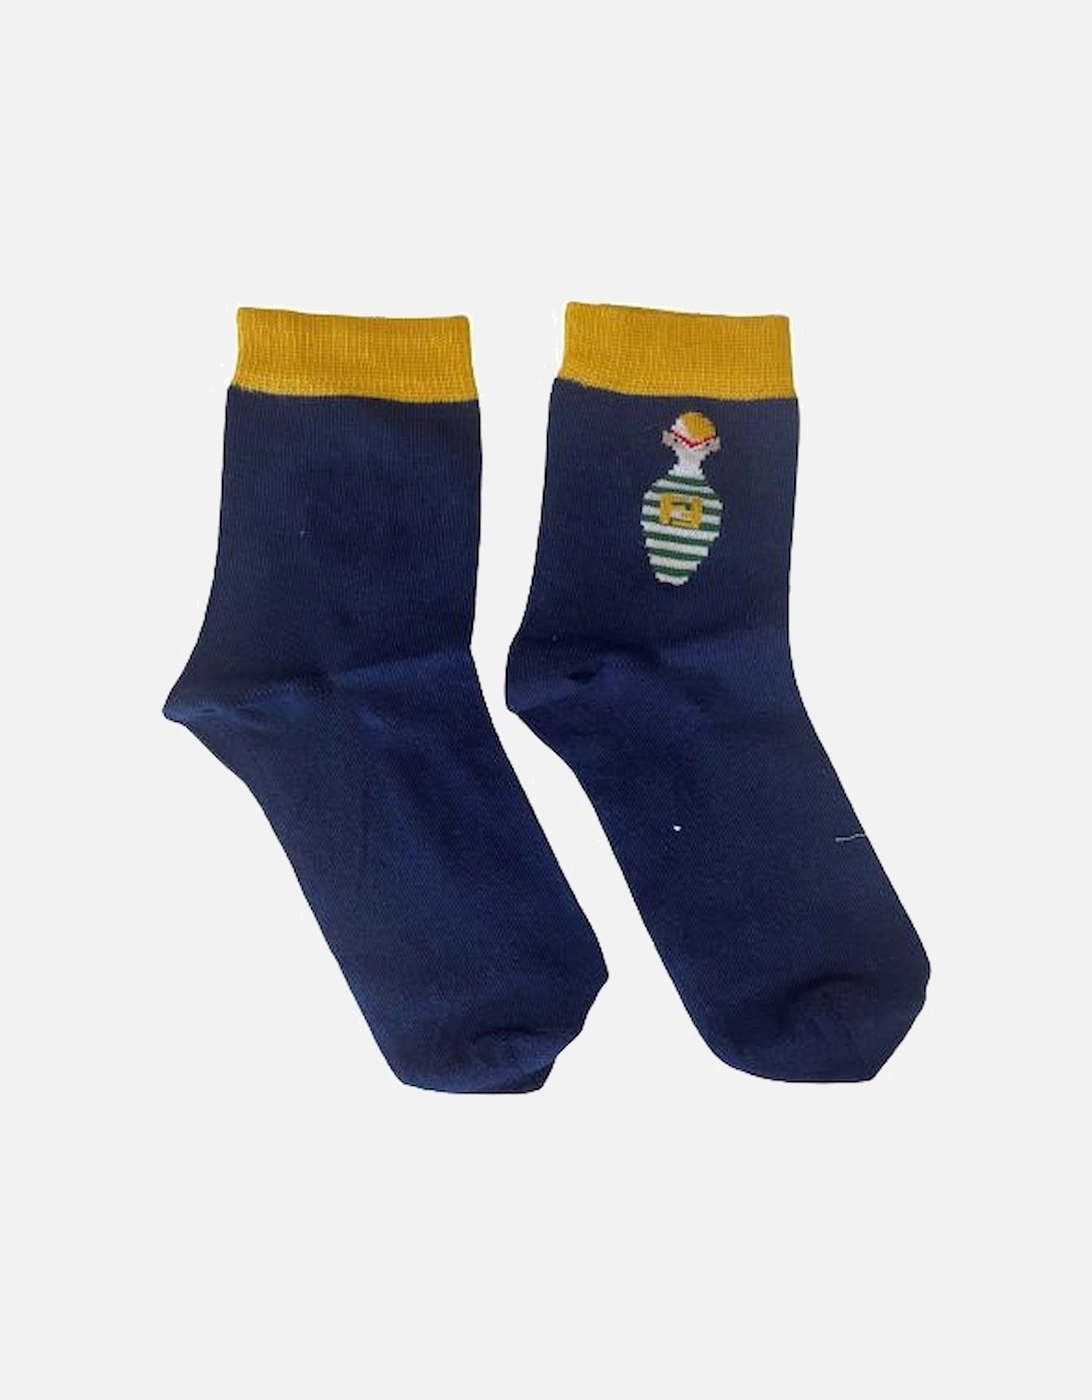 Boys Bowling Print Socks